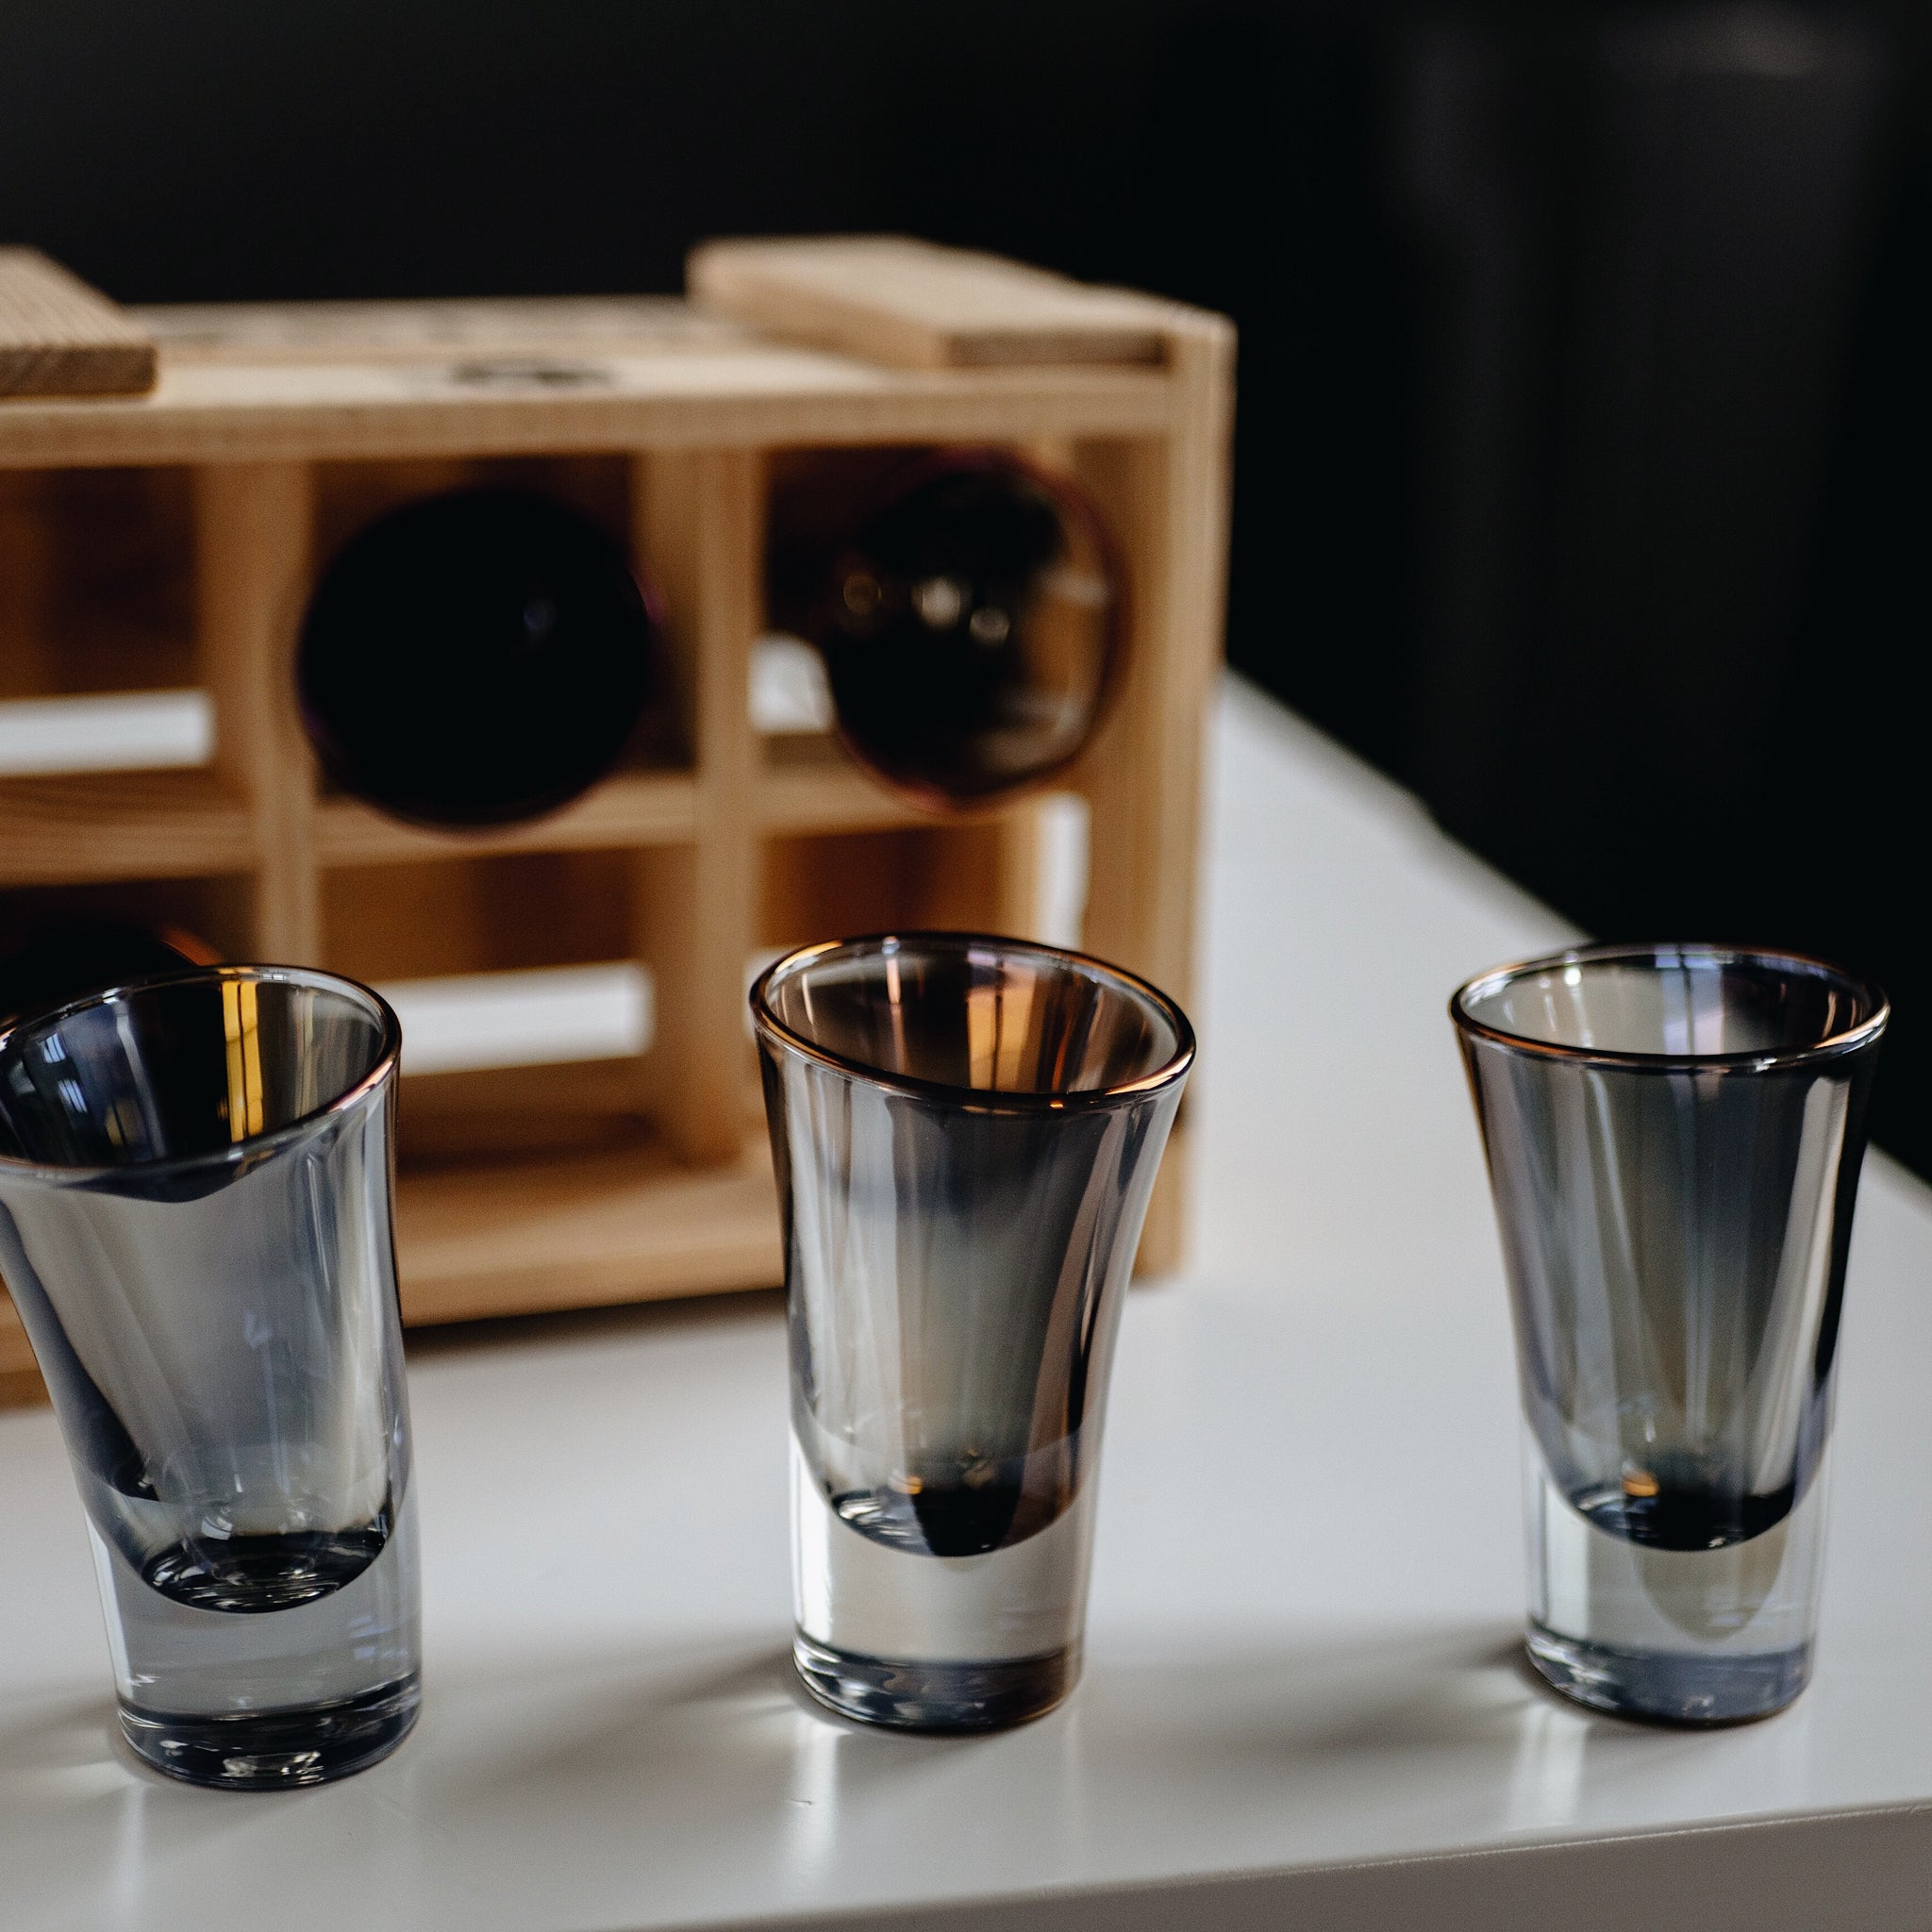 Set of 6 Tequila shots glasses